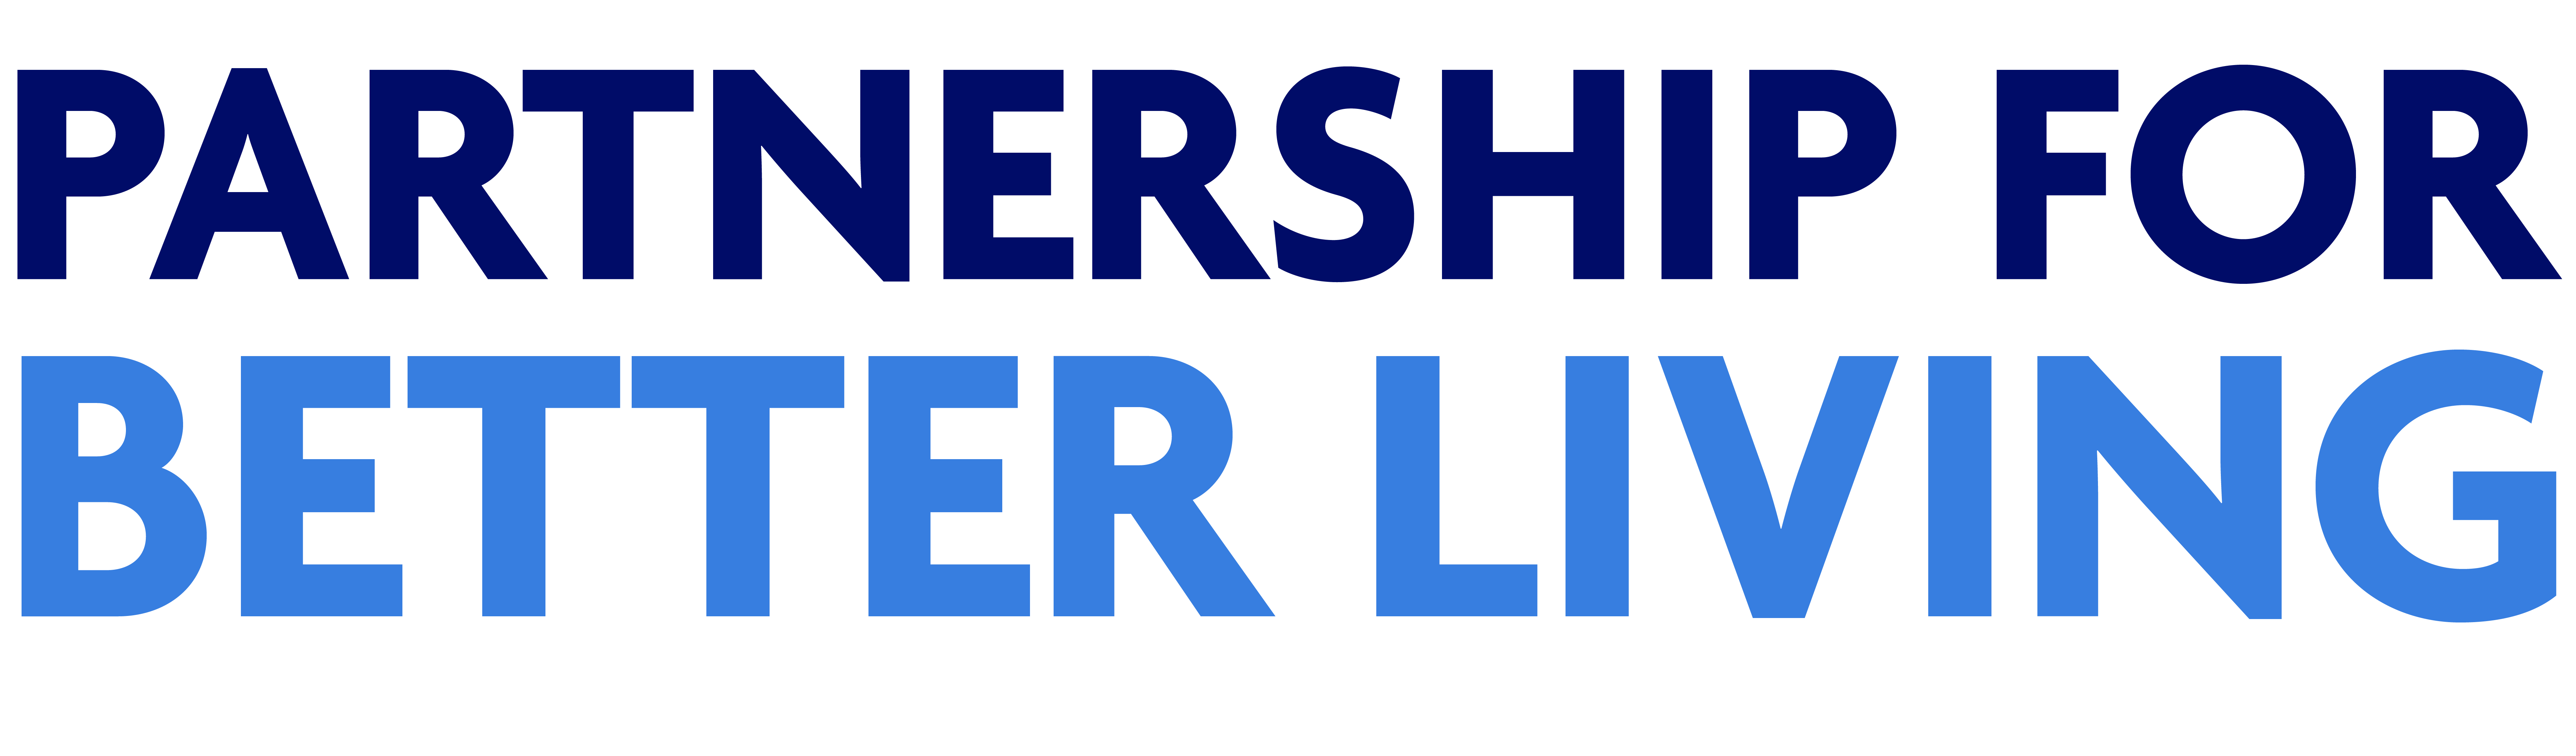 Partnership for Better Living logo